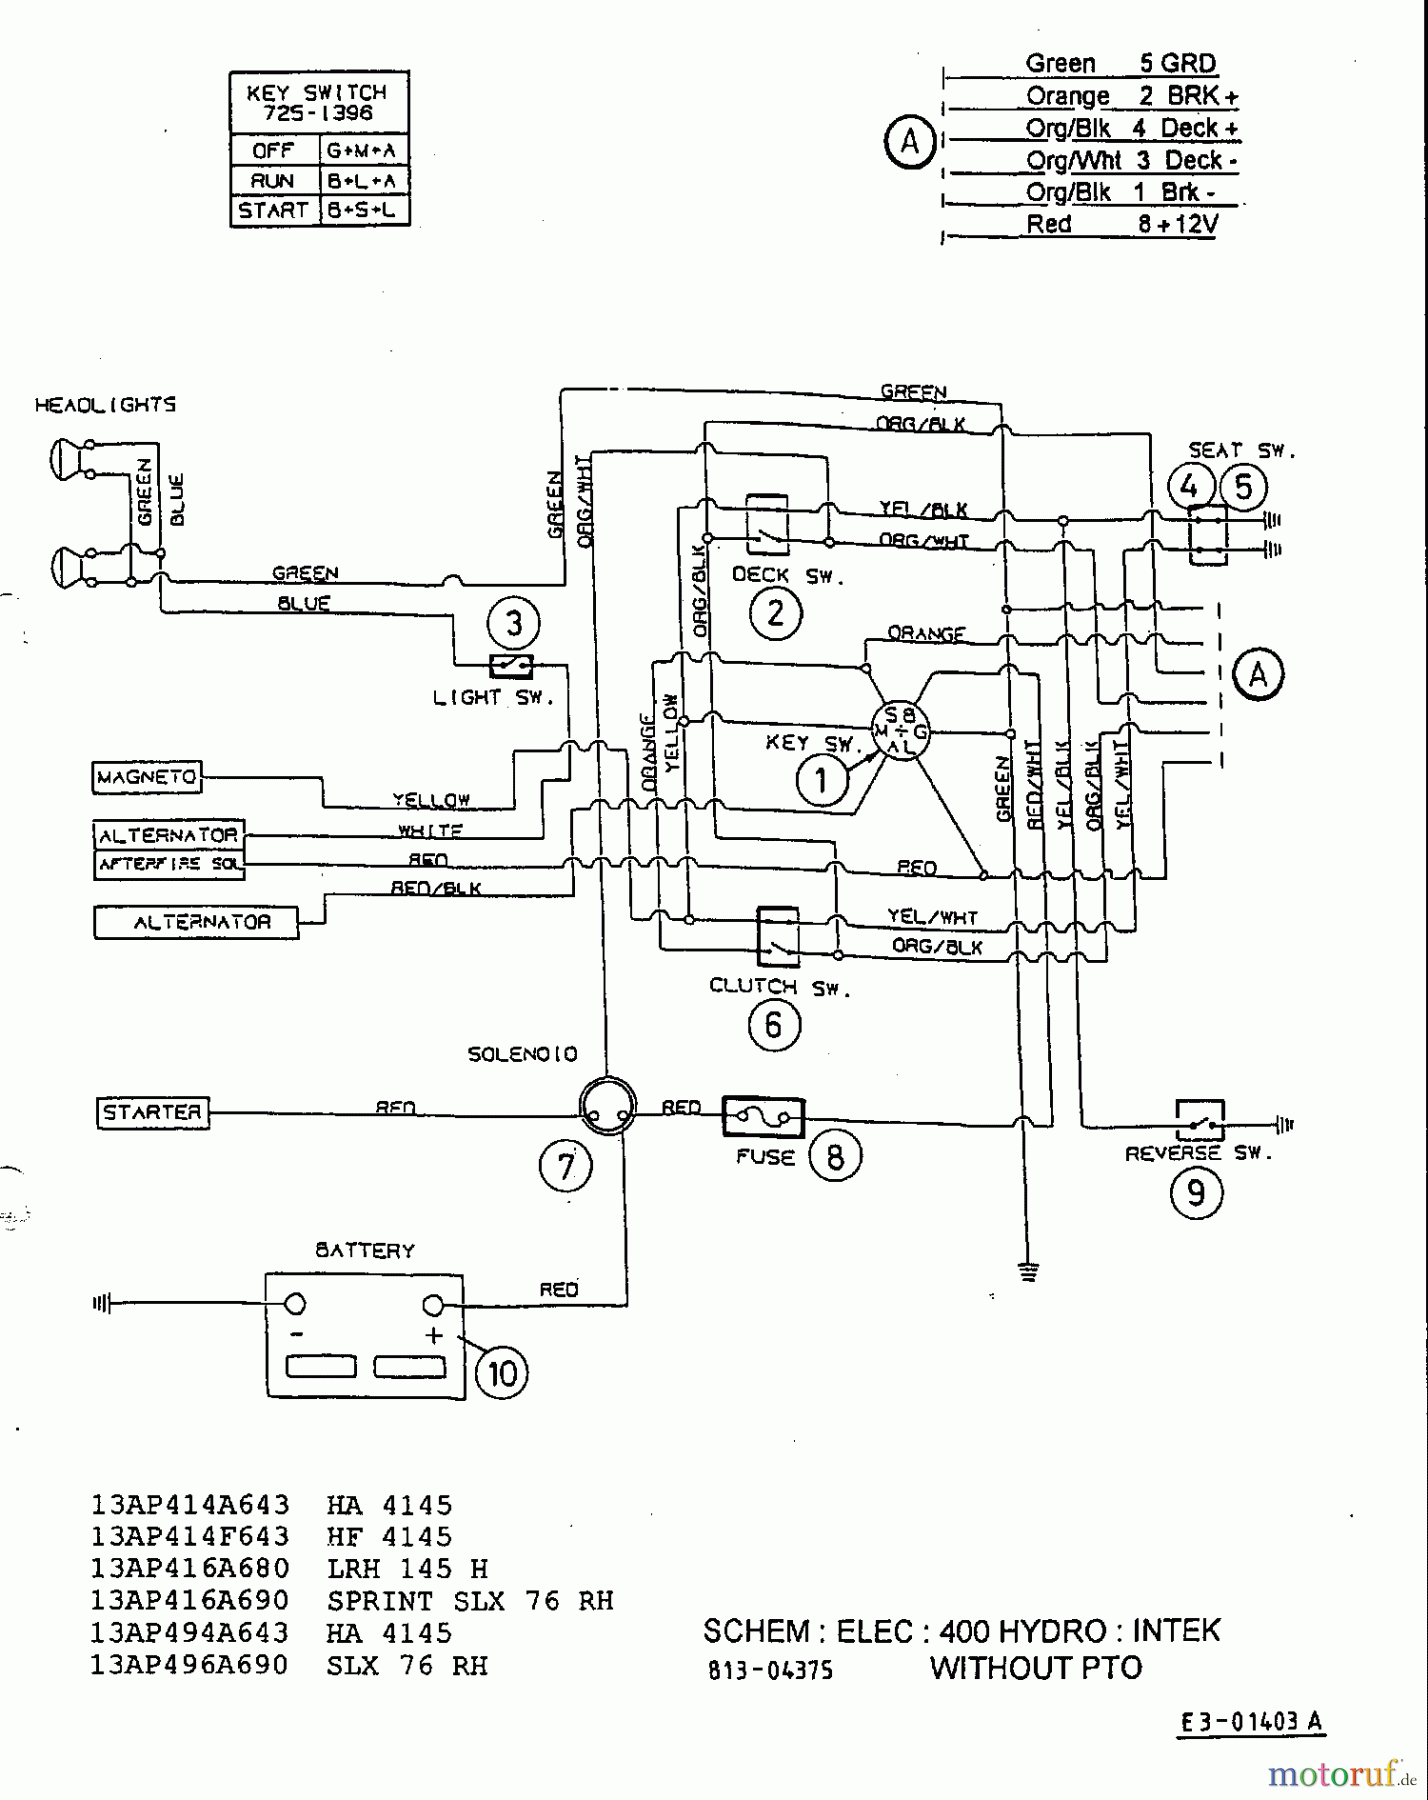  Mastercut Rasentraktoren 13/92 H 13AA410E659  (2000) Schaltplan Intek ohne Elektromagnetkupplung